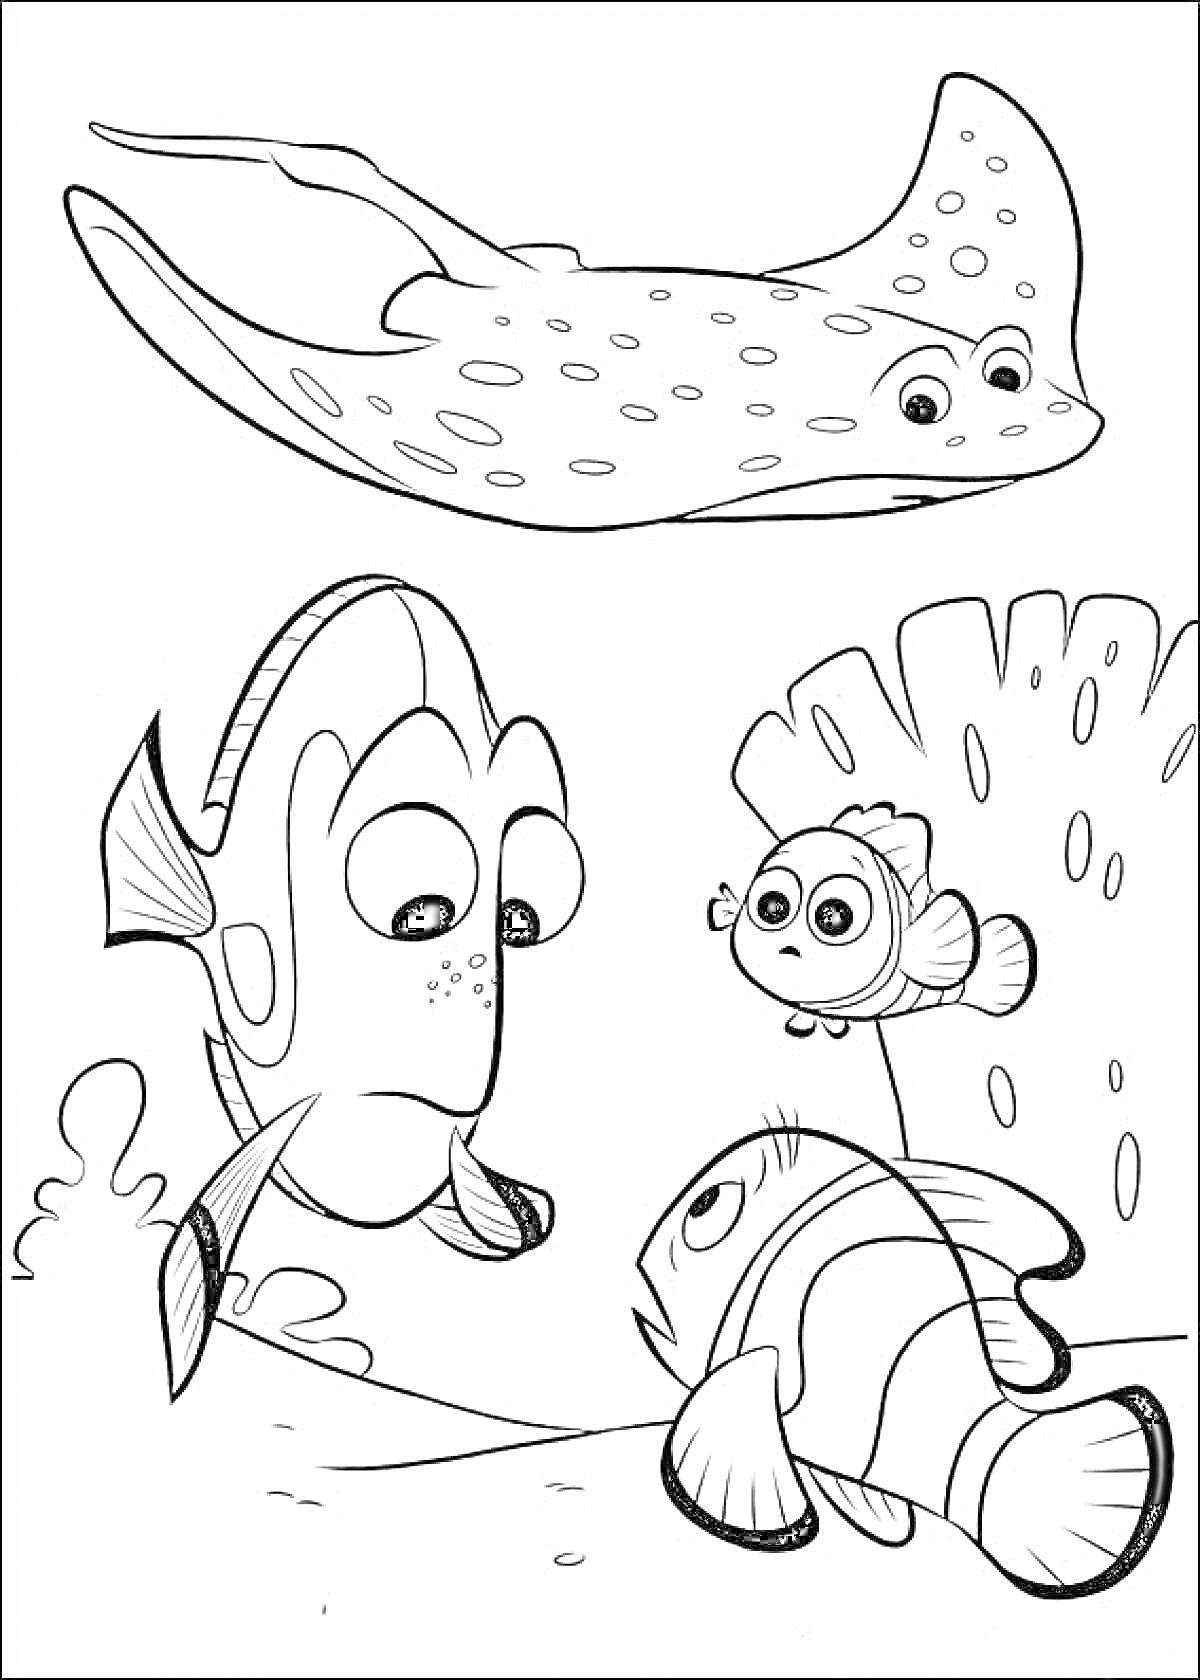 Раскраска Дори и друзья под водой: Дори, Немо, Мистер Скат и другой рыбке у кораллов